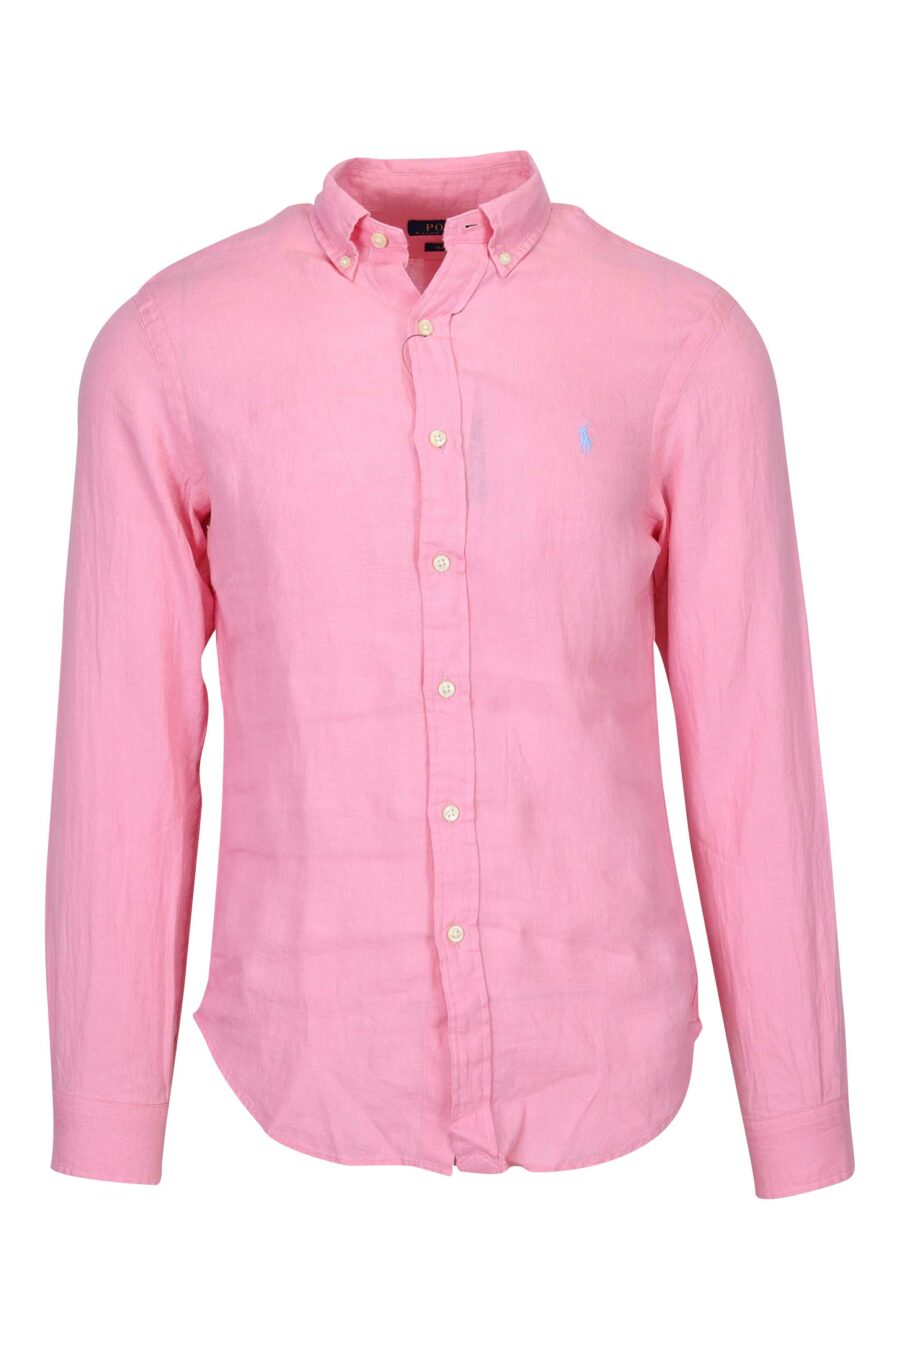 Chemise rose avec mini-logo "polo" - 3616535874473